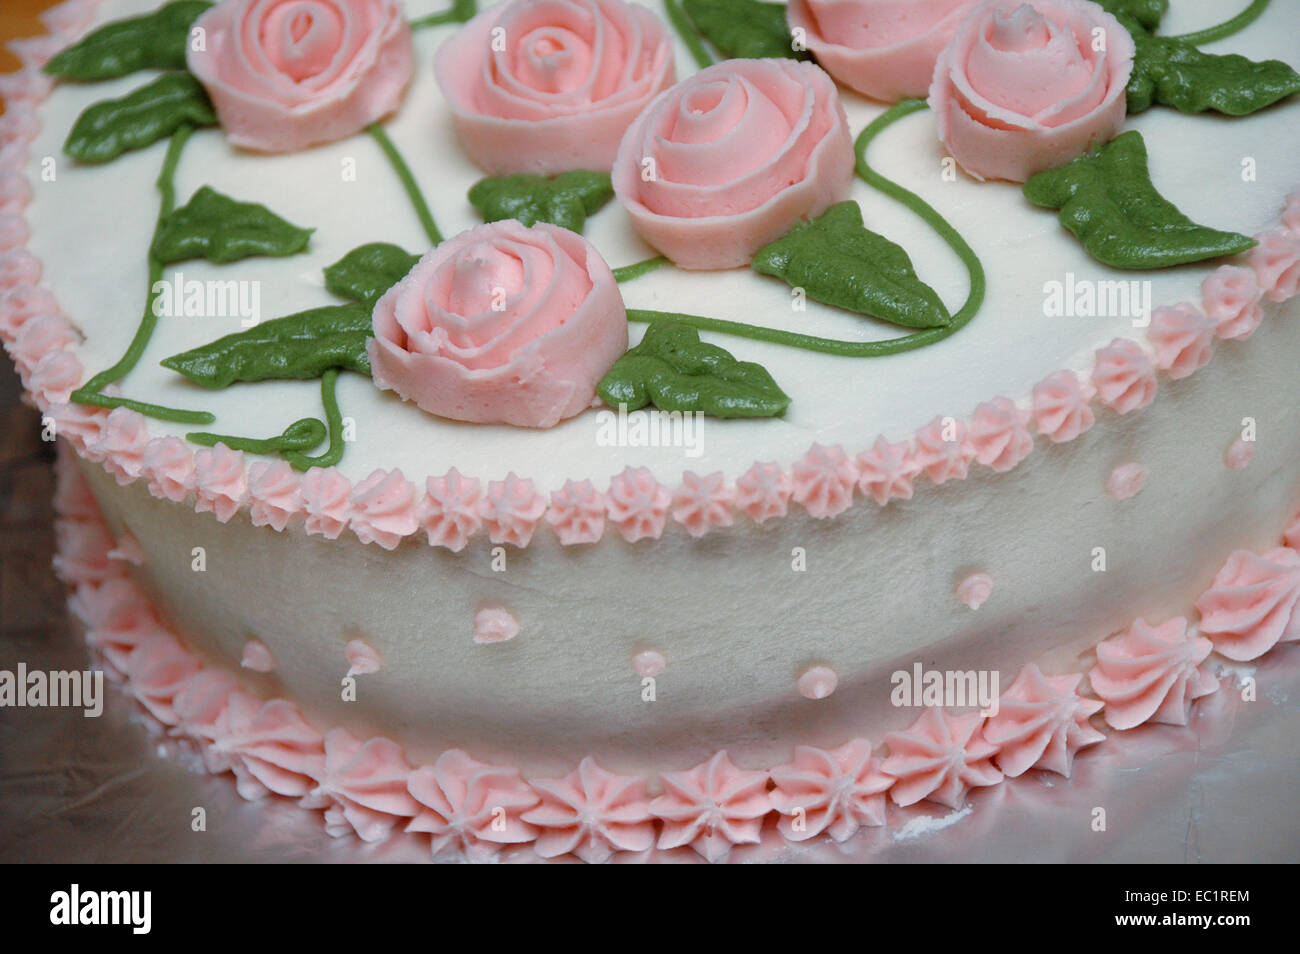 Dettaglio di una torta con la glassa, ciliegina fiori e foglie. Foto Stock